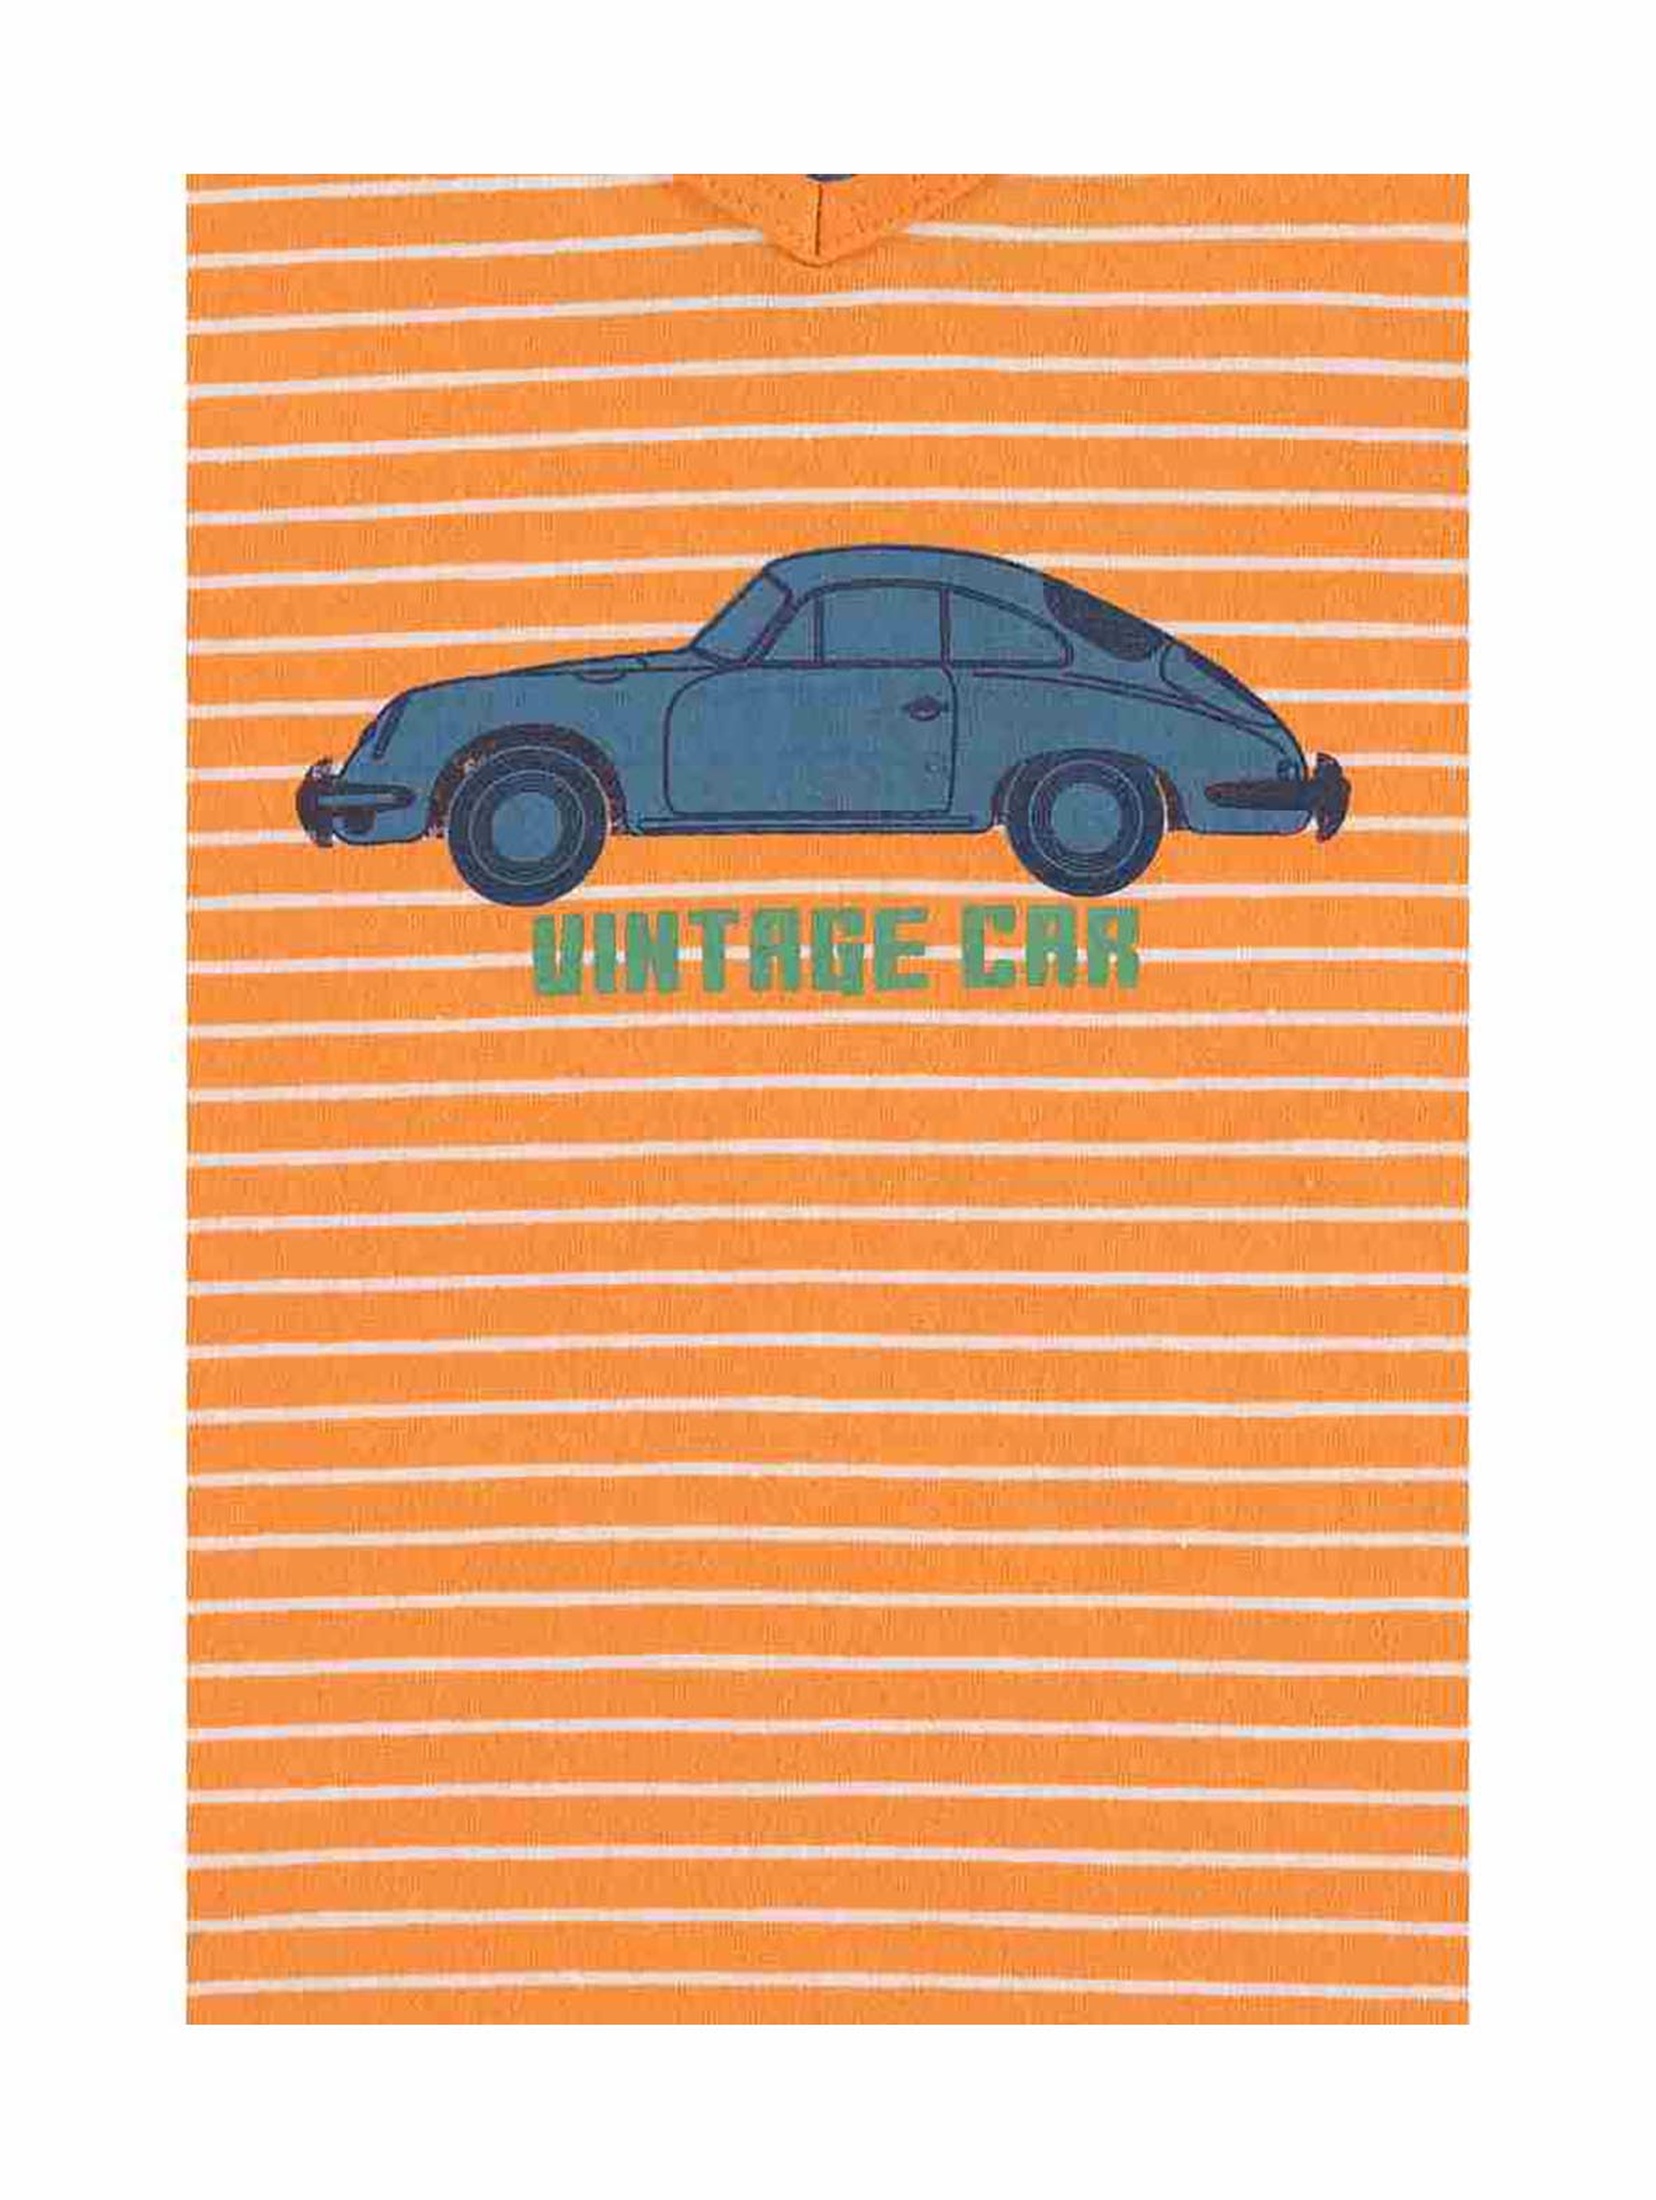 T-shirt chłopięcy pomarańczowy - Vintage car - Lief